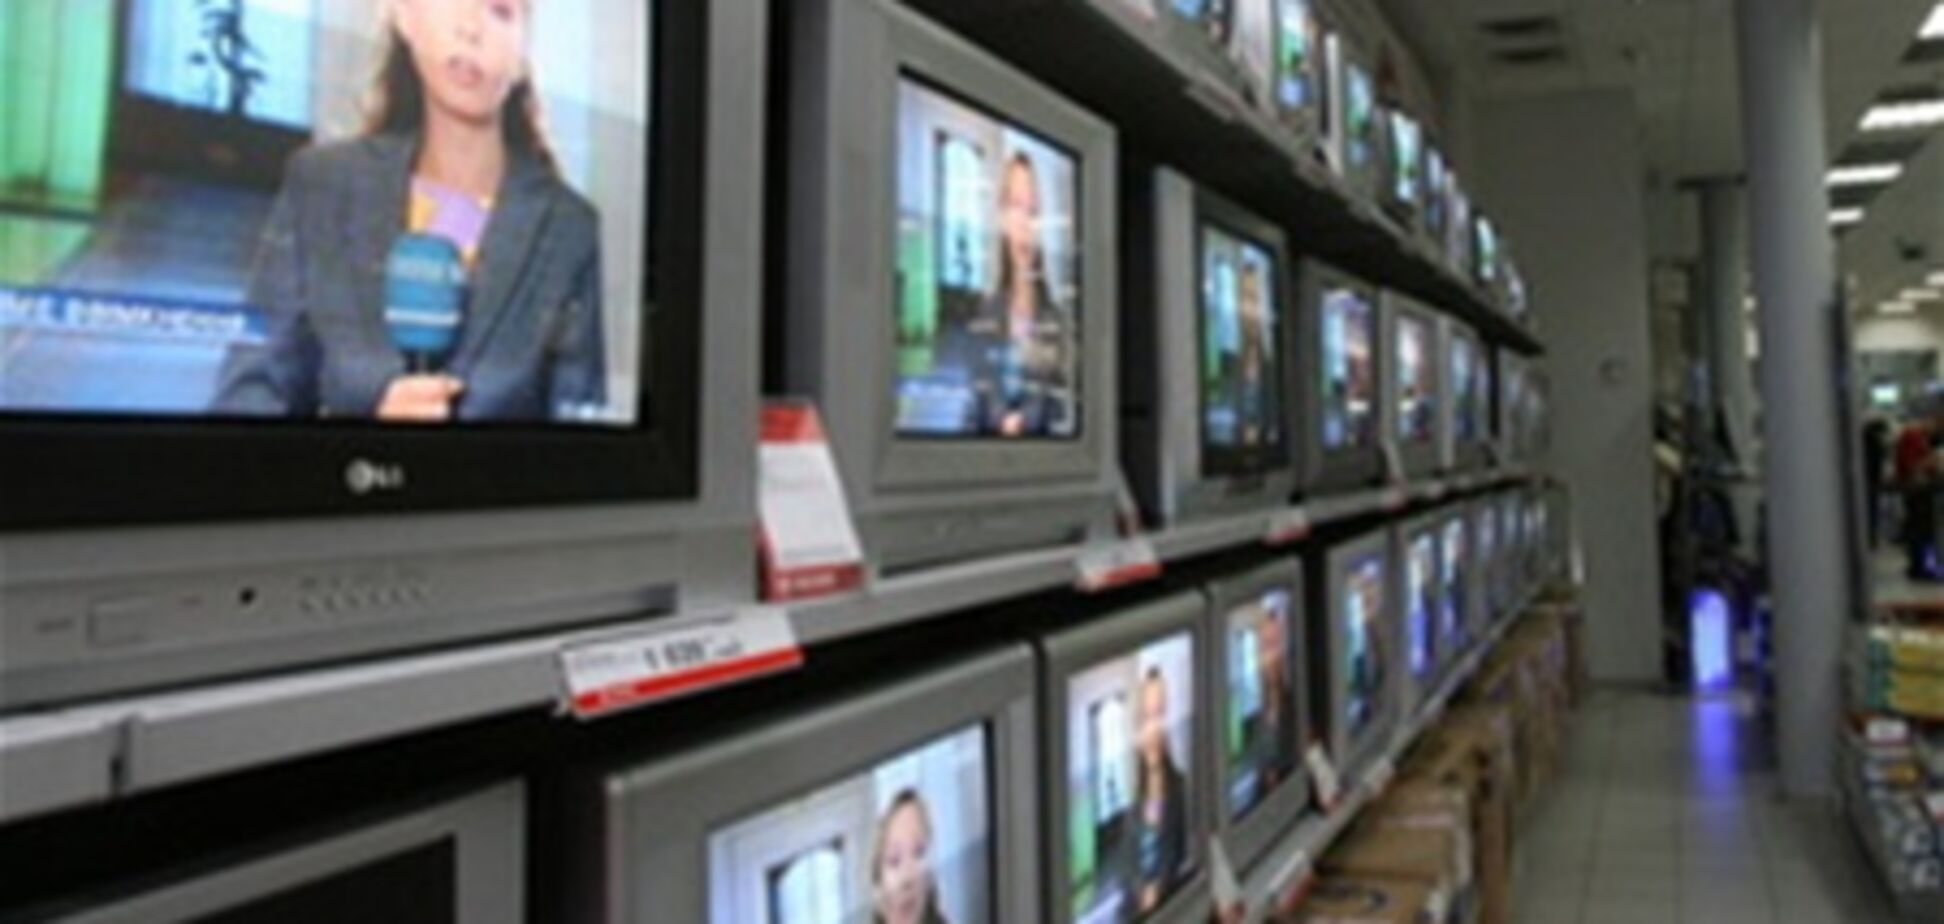 Рейтинги украинских телеканалов фальсифицируют - расследование